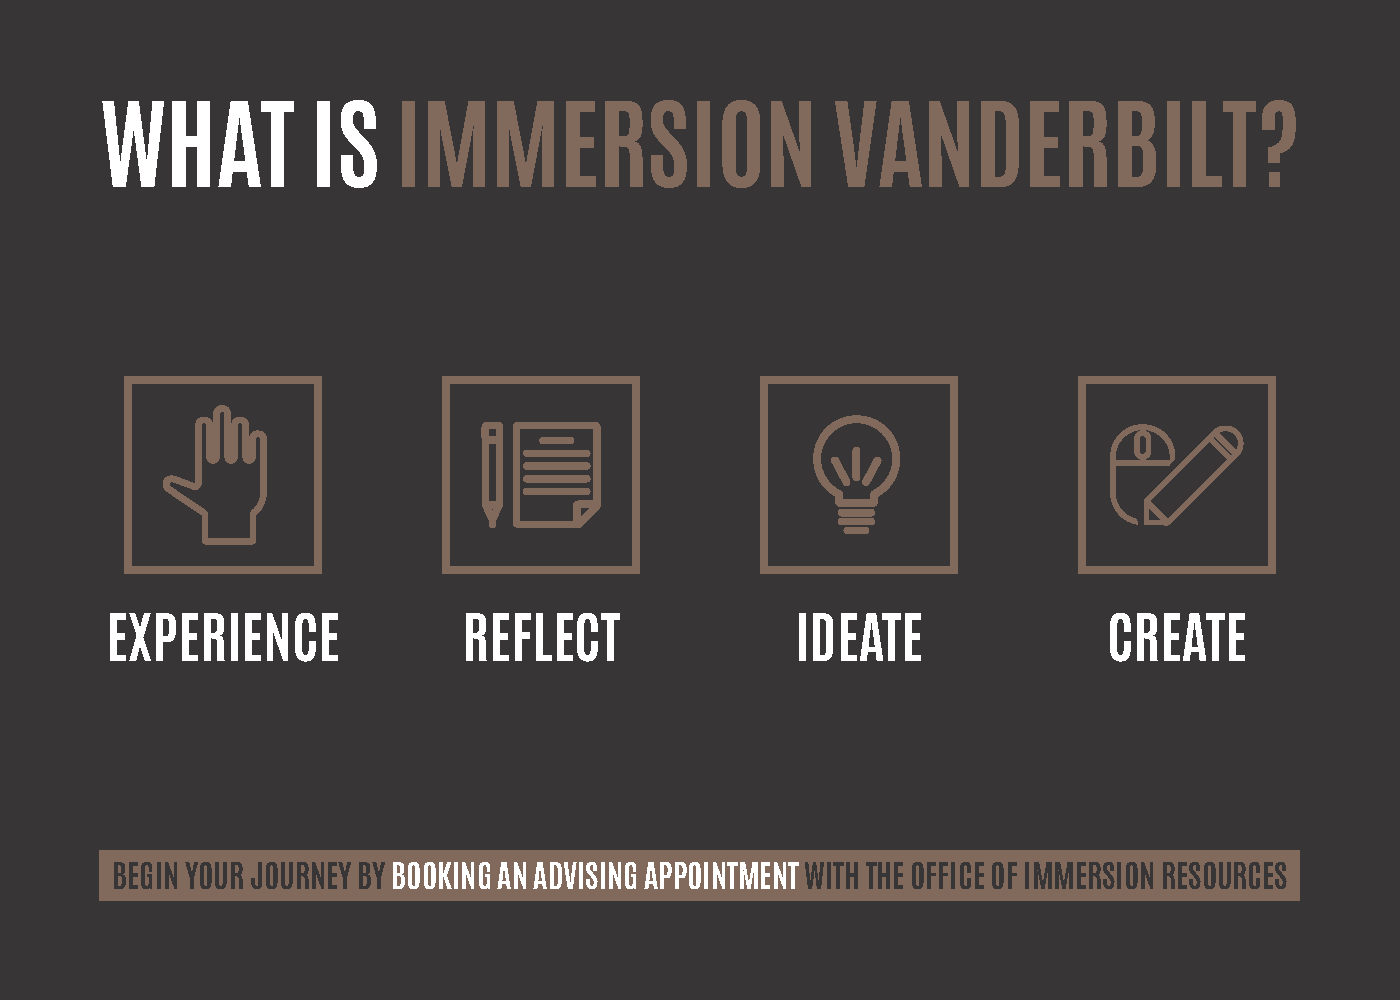 Immersion Vanderbilt Spring 2022 Campaign - Postcard_V3_Page_1